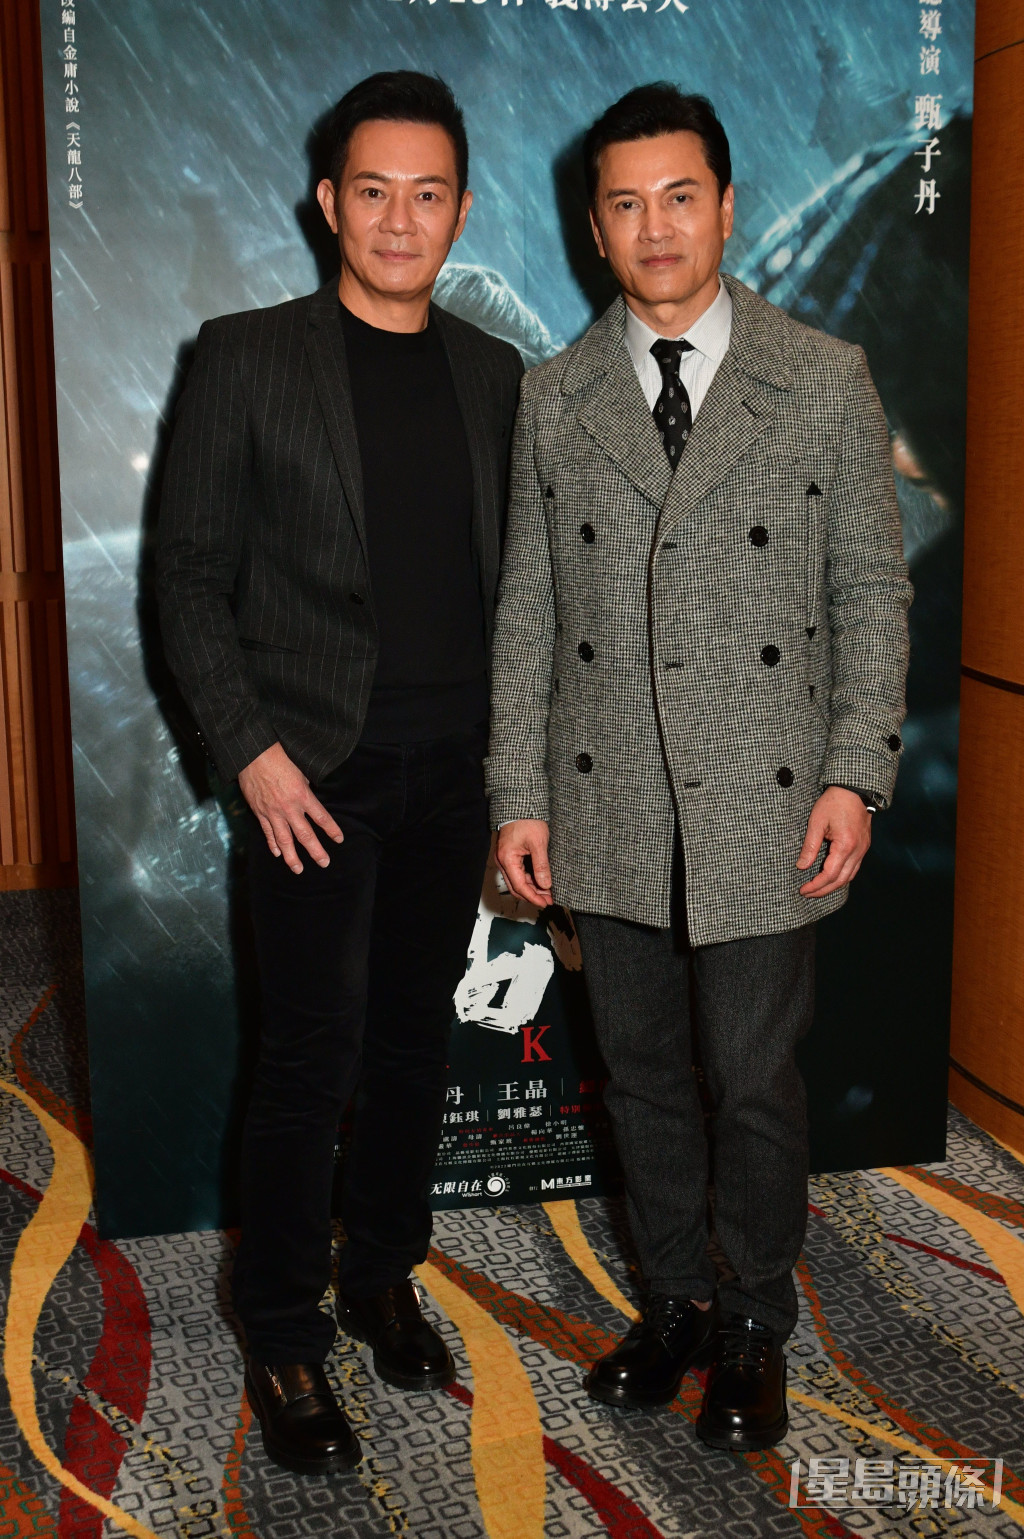 張兆輝與呂良偉曾出席電影《天龍八部之喬峰傳》慈善首映。